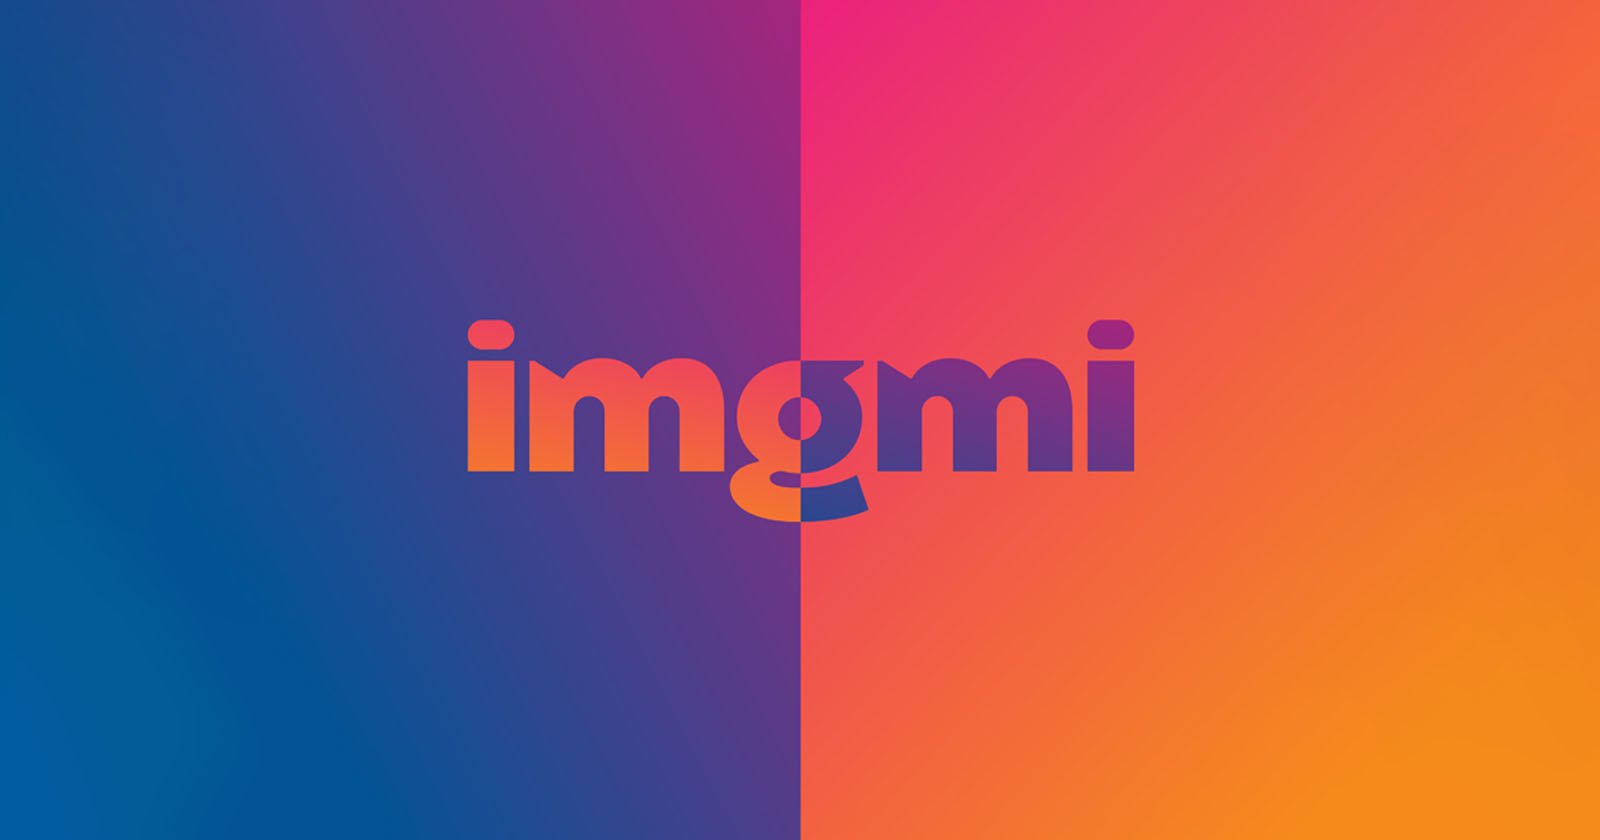  skylum imgmi ai-powered photo editing smartphone app 